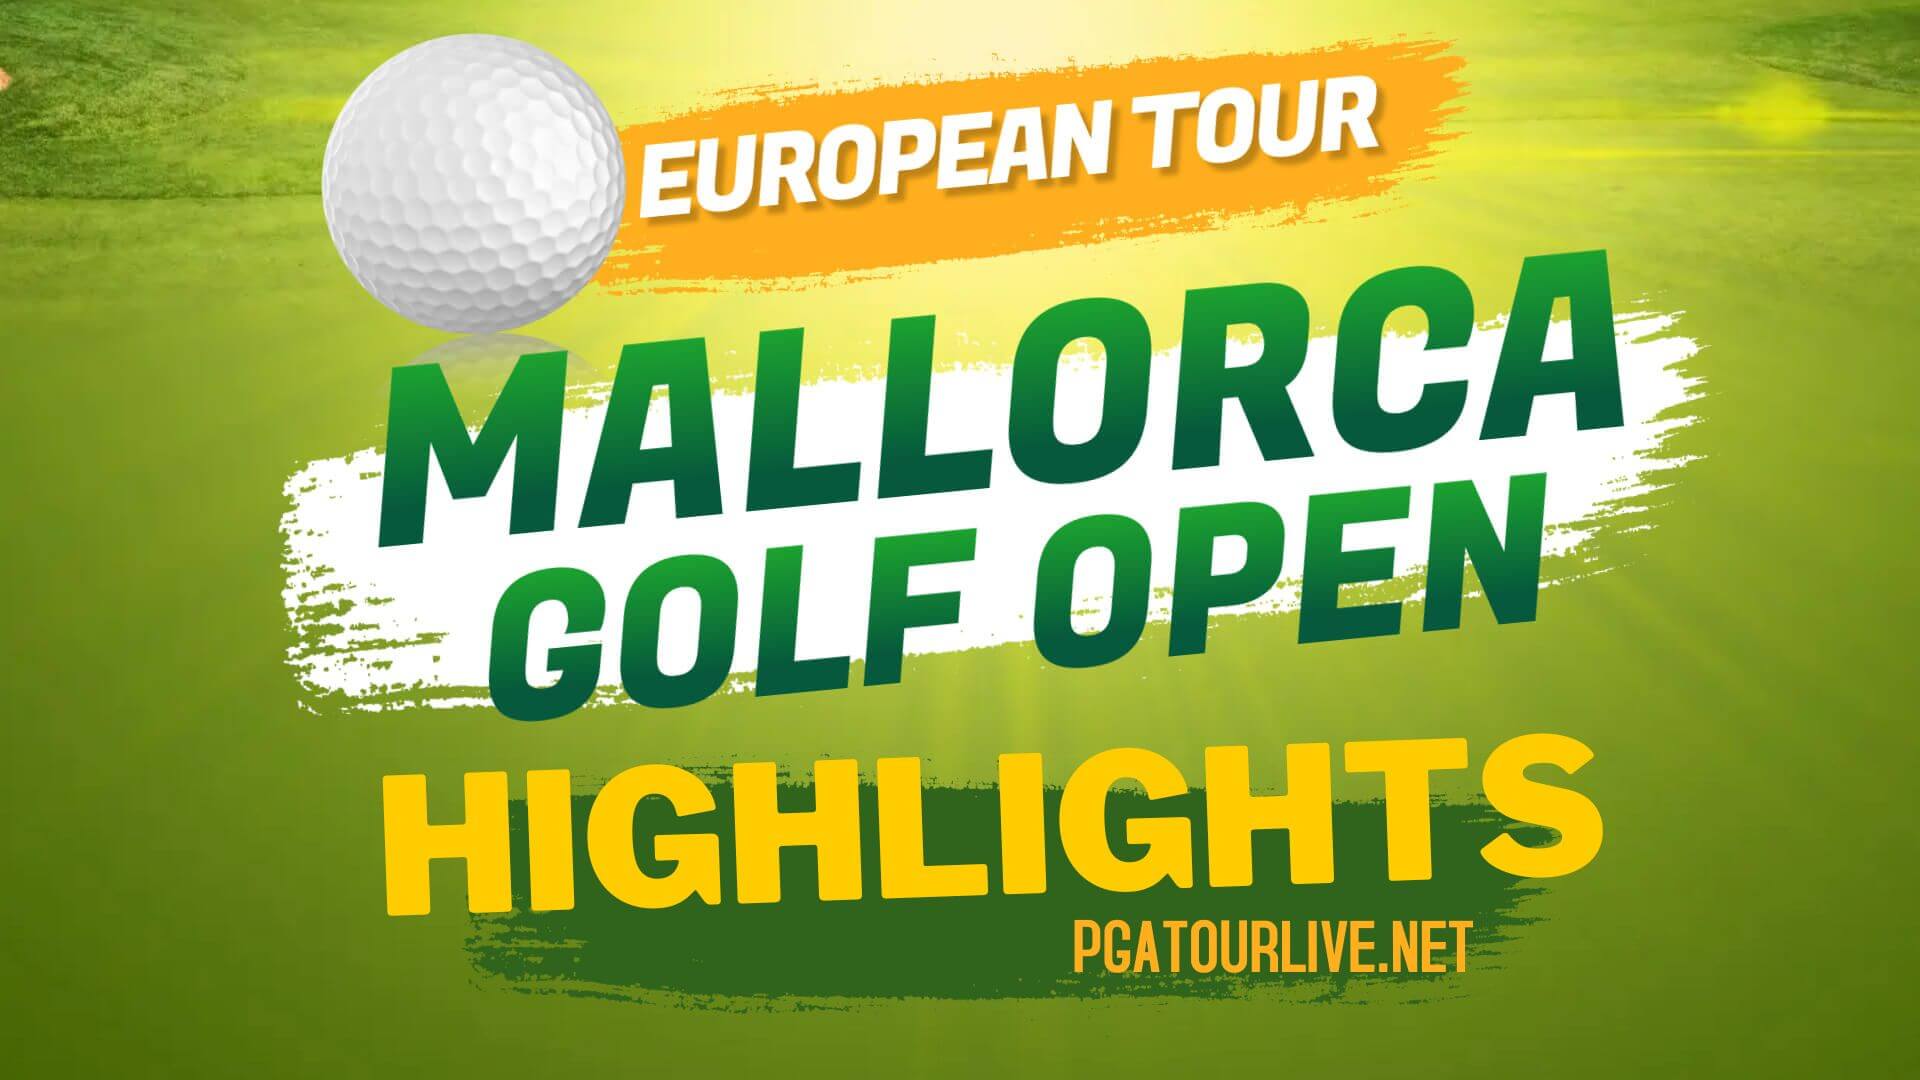 Mallorca Golf Open Highlights Day 4 European Tour 2022